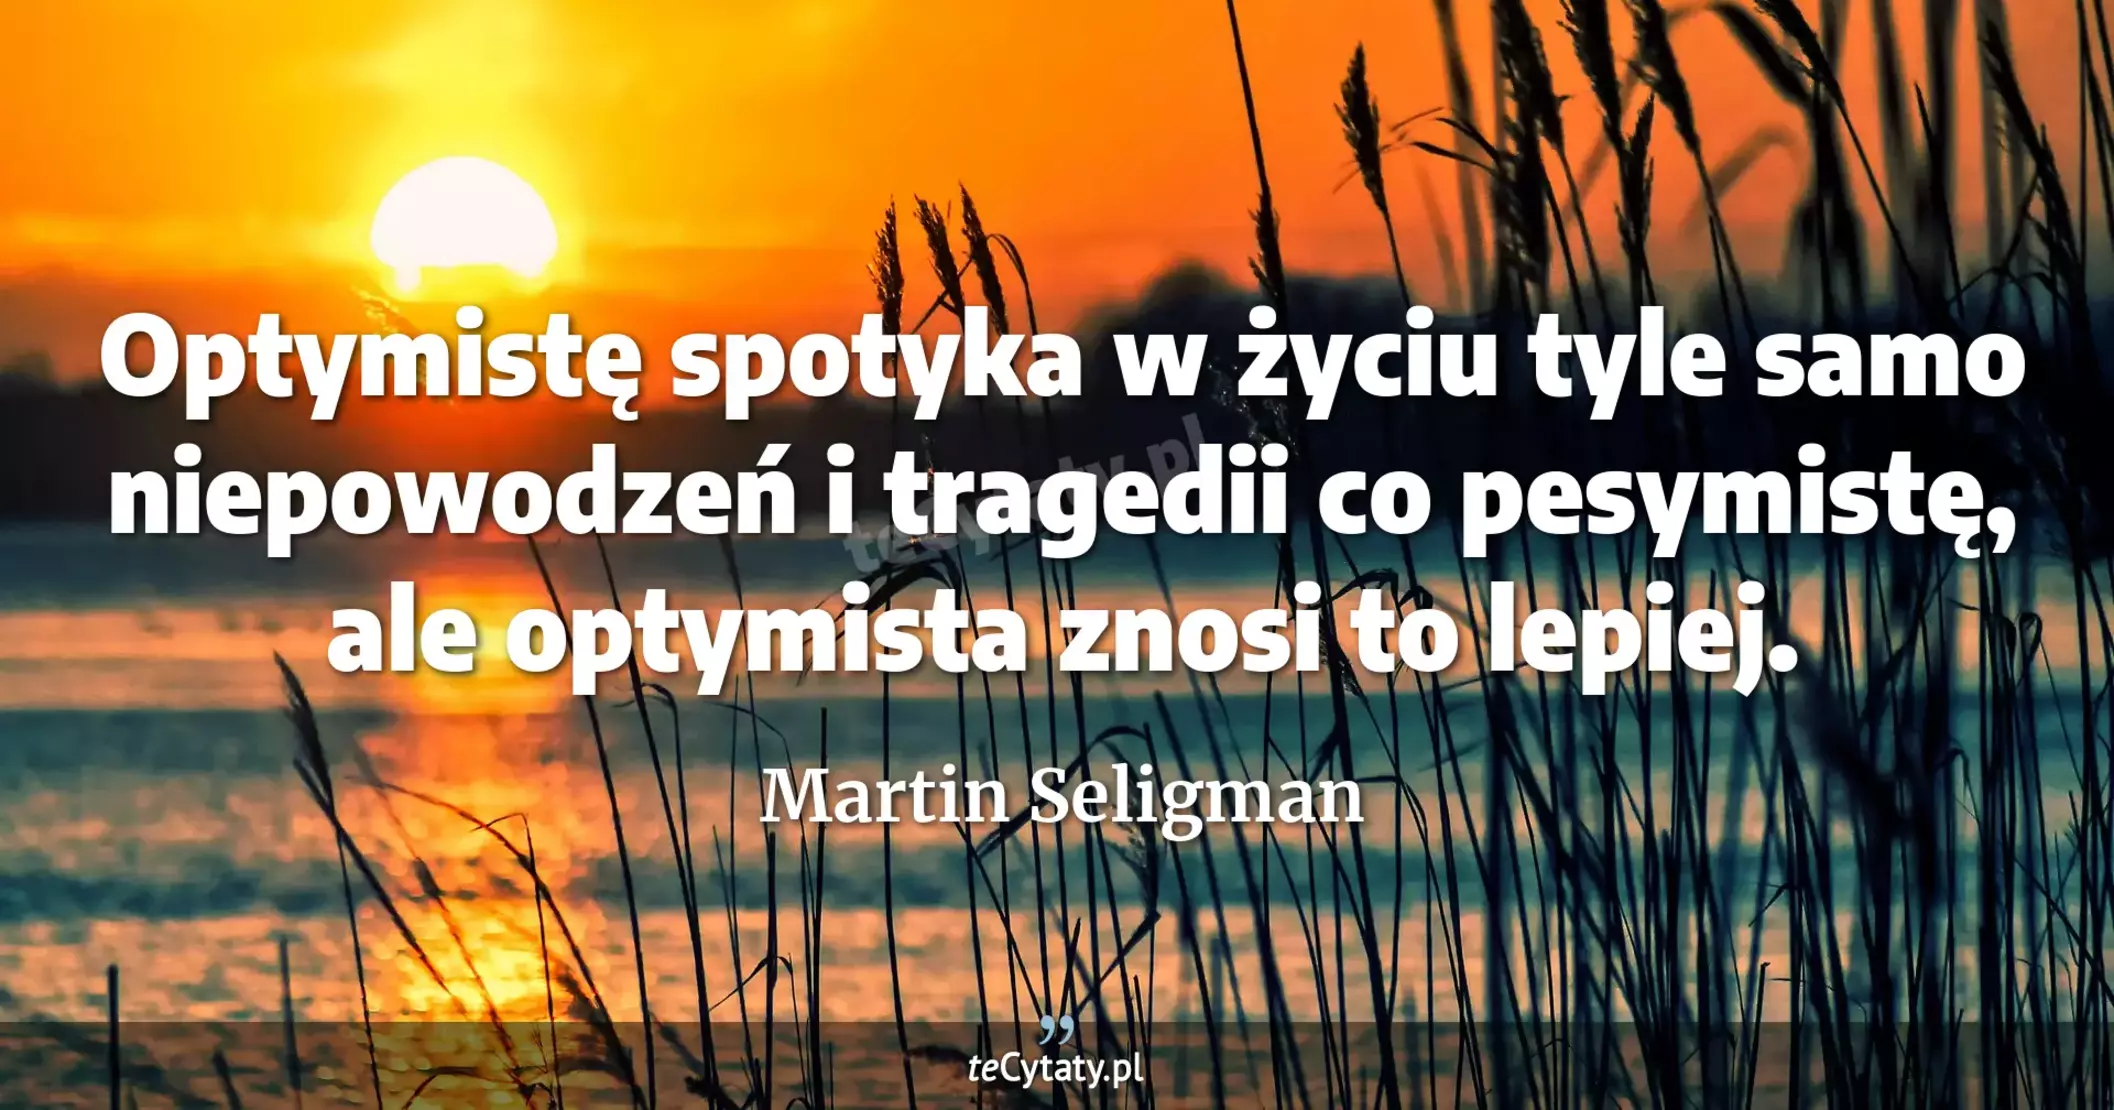 Optymistę spotyka w życiu tyle samo niepowodzeń i tragedii co pesymistę, ale optymista znosi to lepiej. - Martin Seligman